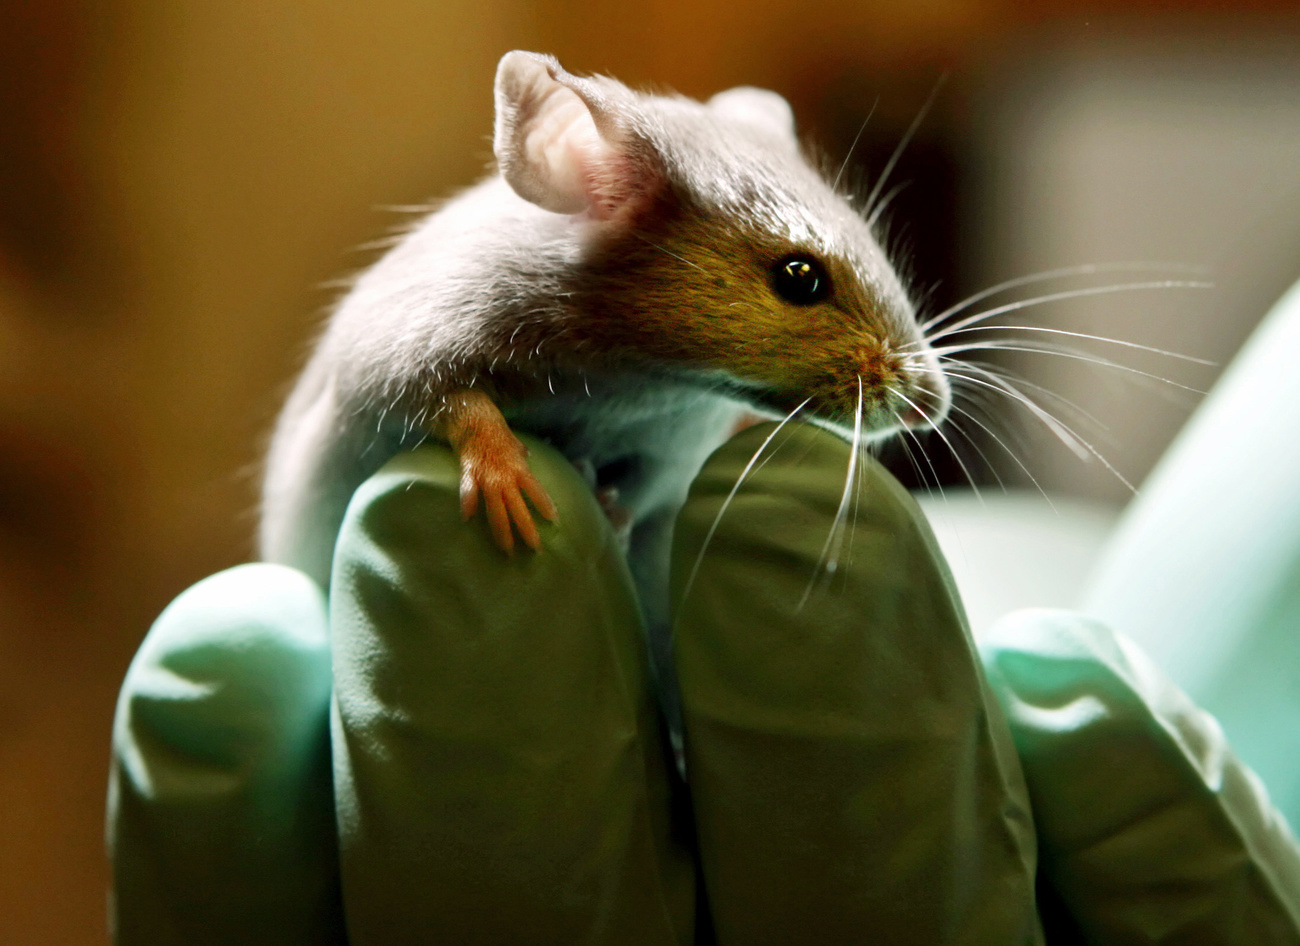 Recherche: alternatives à l'expérimentation animale - SWI